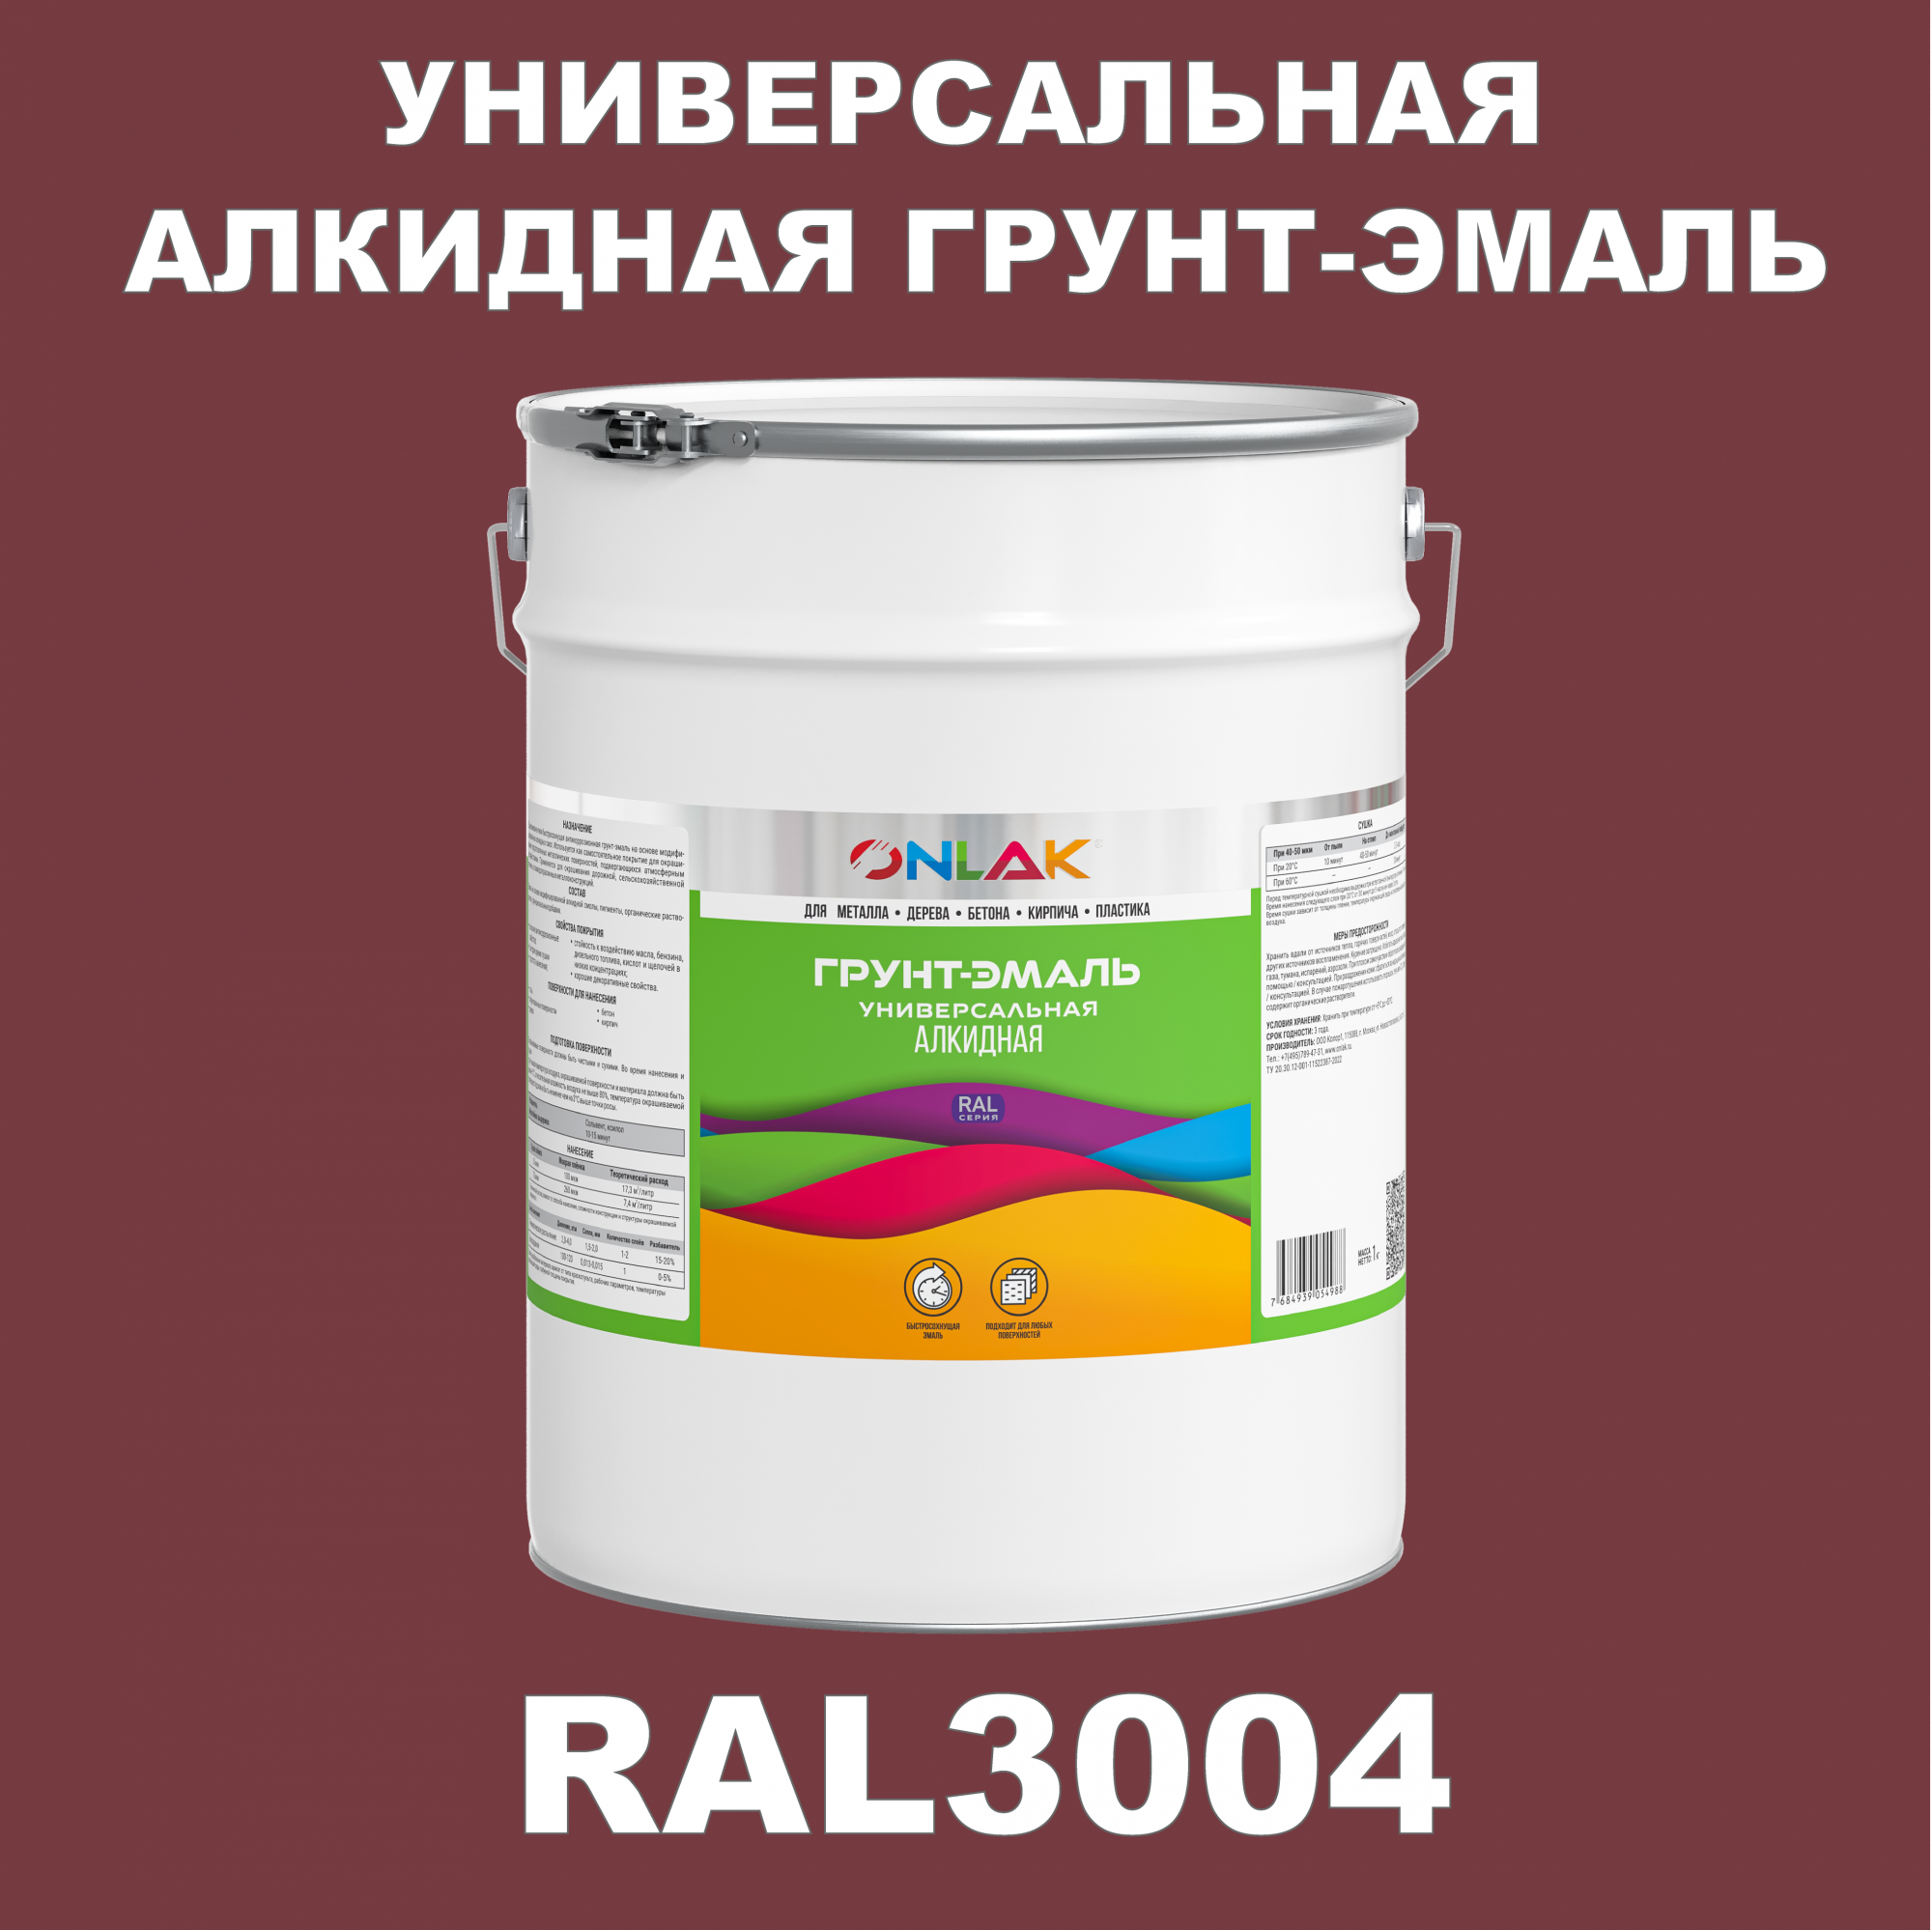 Грунт-эмаль ONLAK 1К RAL3004 антикоррозионная алкидная по металлу по ржавчине 20 кг